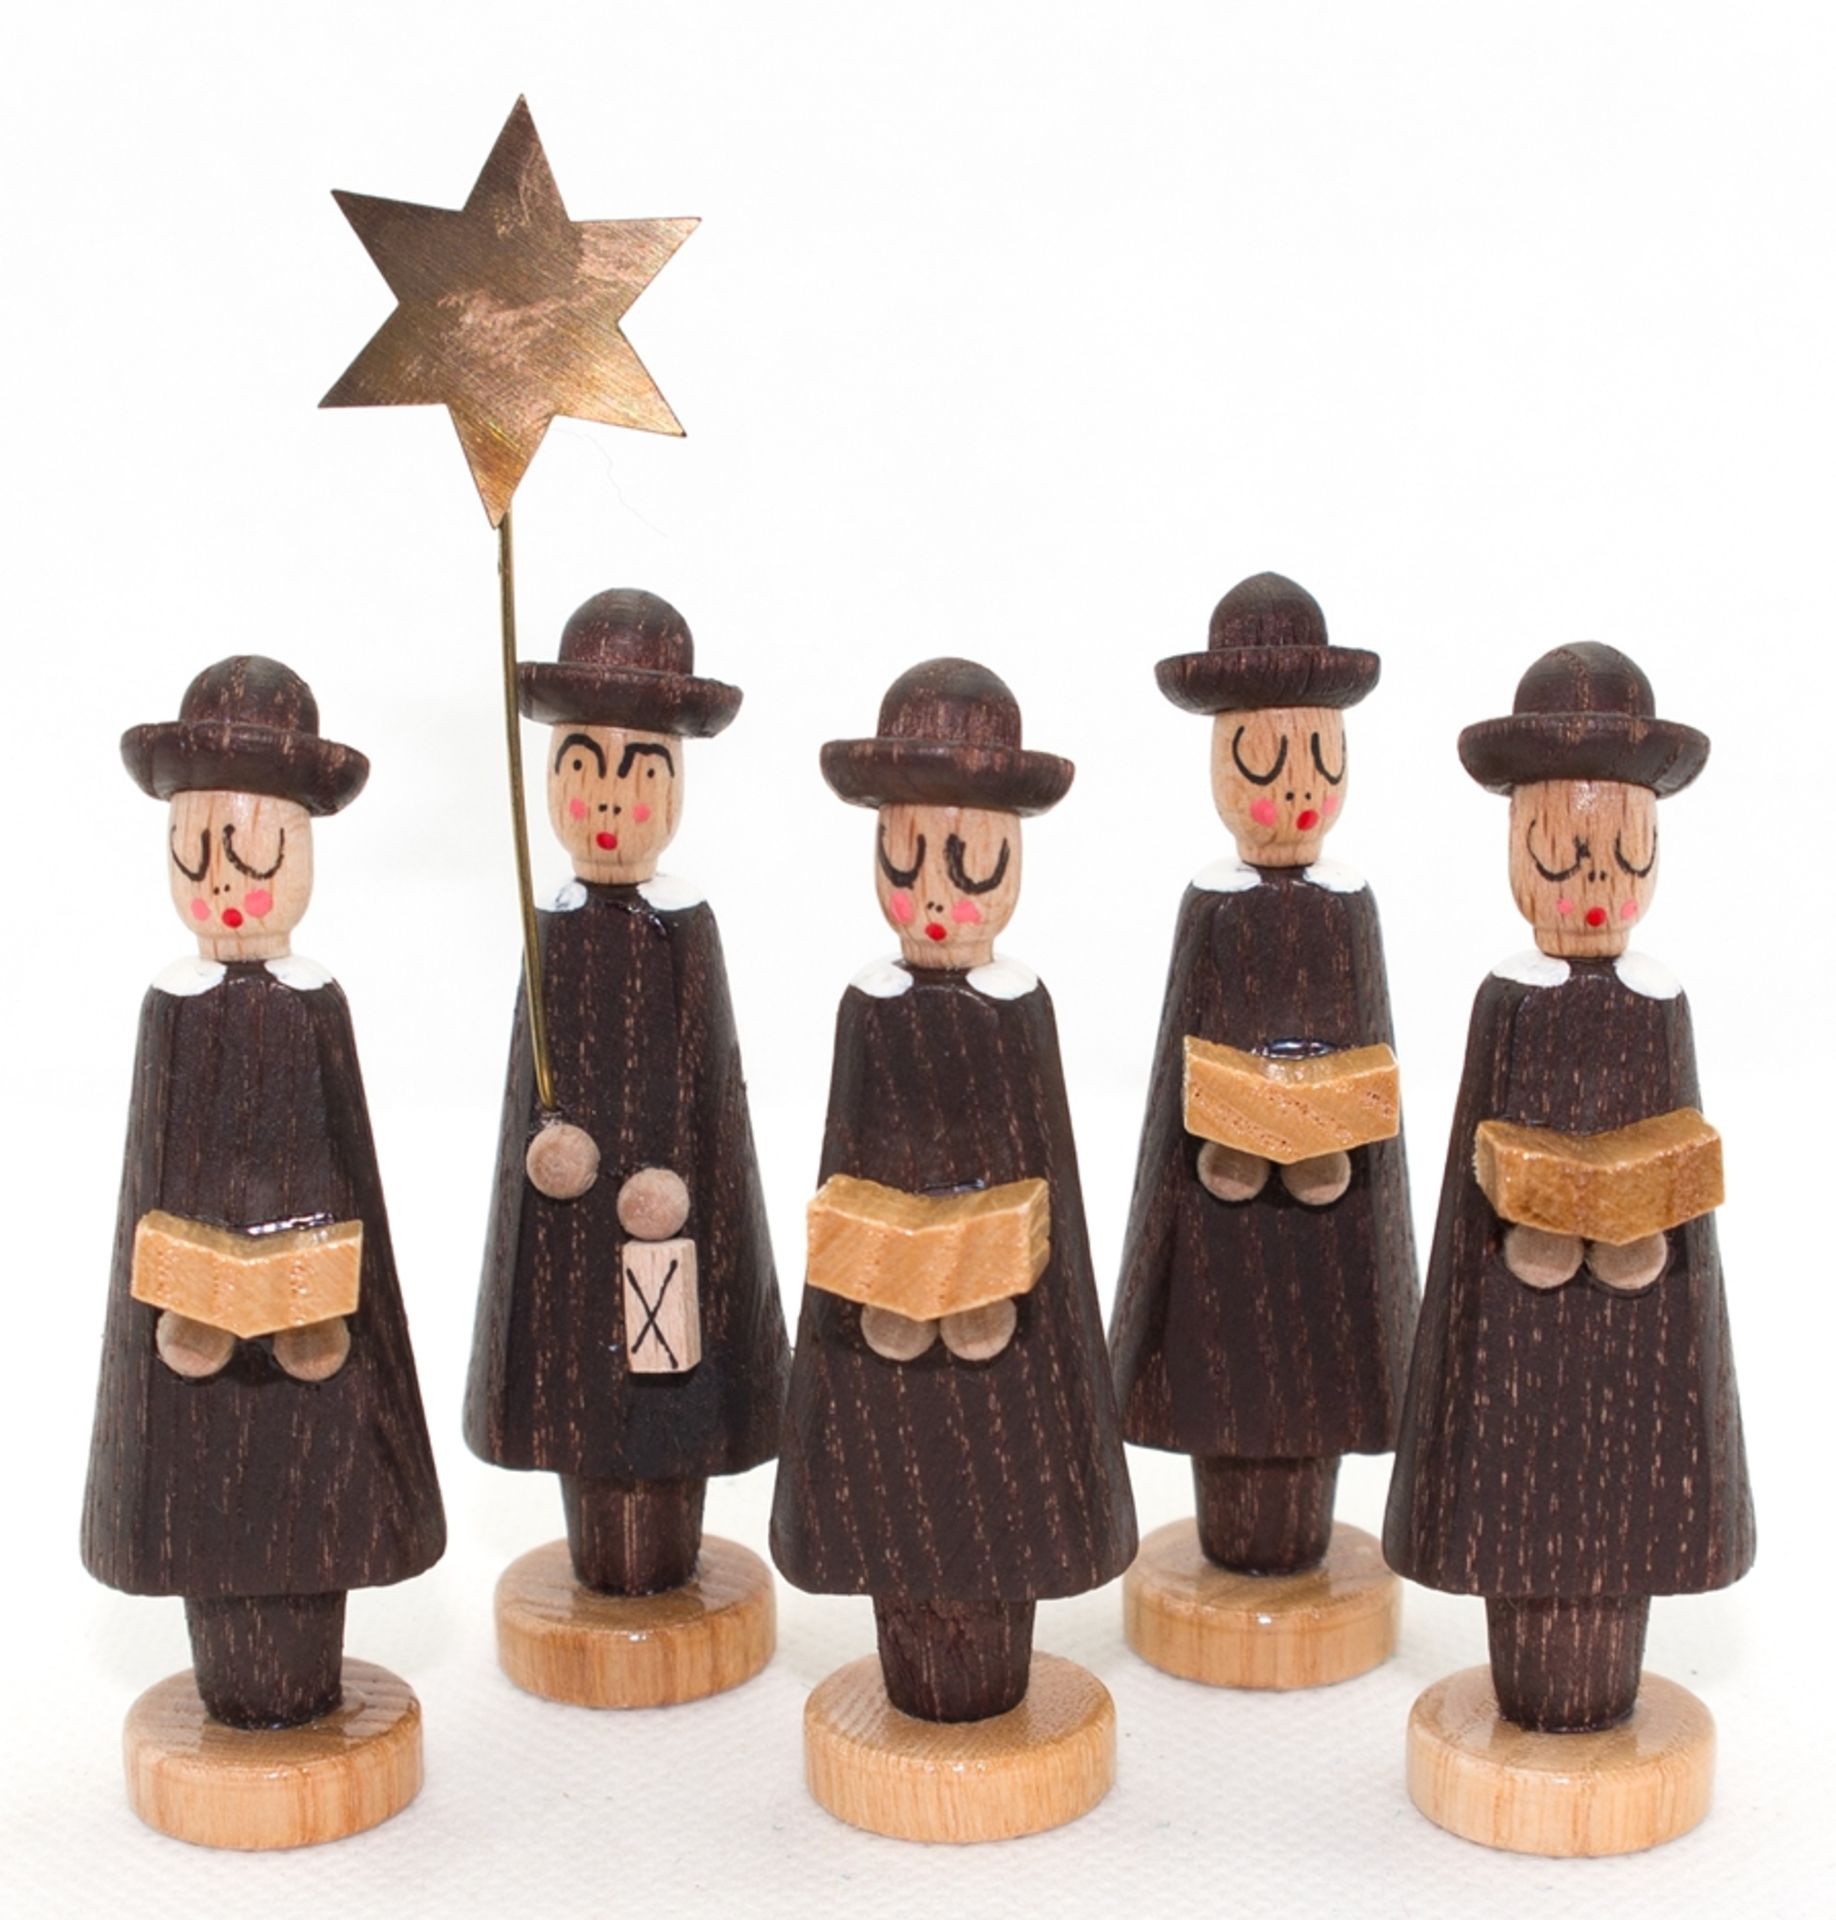 5 Weihnachtsfiguren aus dem Erzgebirge "Kurrende", 1980er Jahre, Holz gebeizt, H. 6,5 - 9 cm, in Or